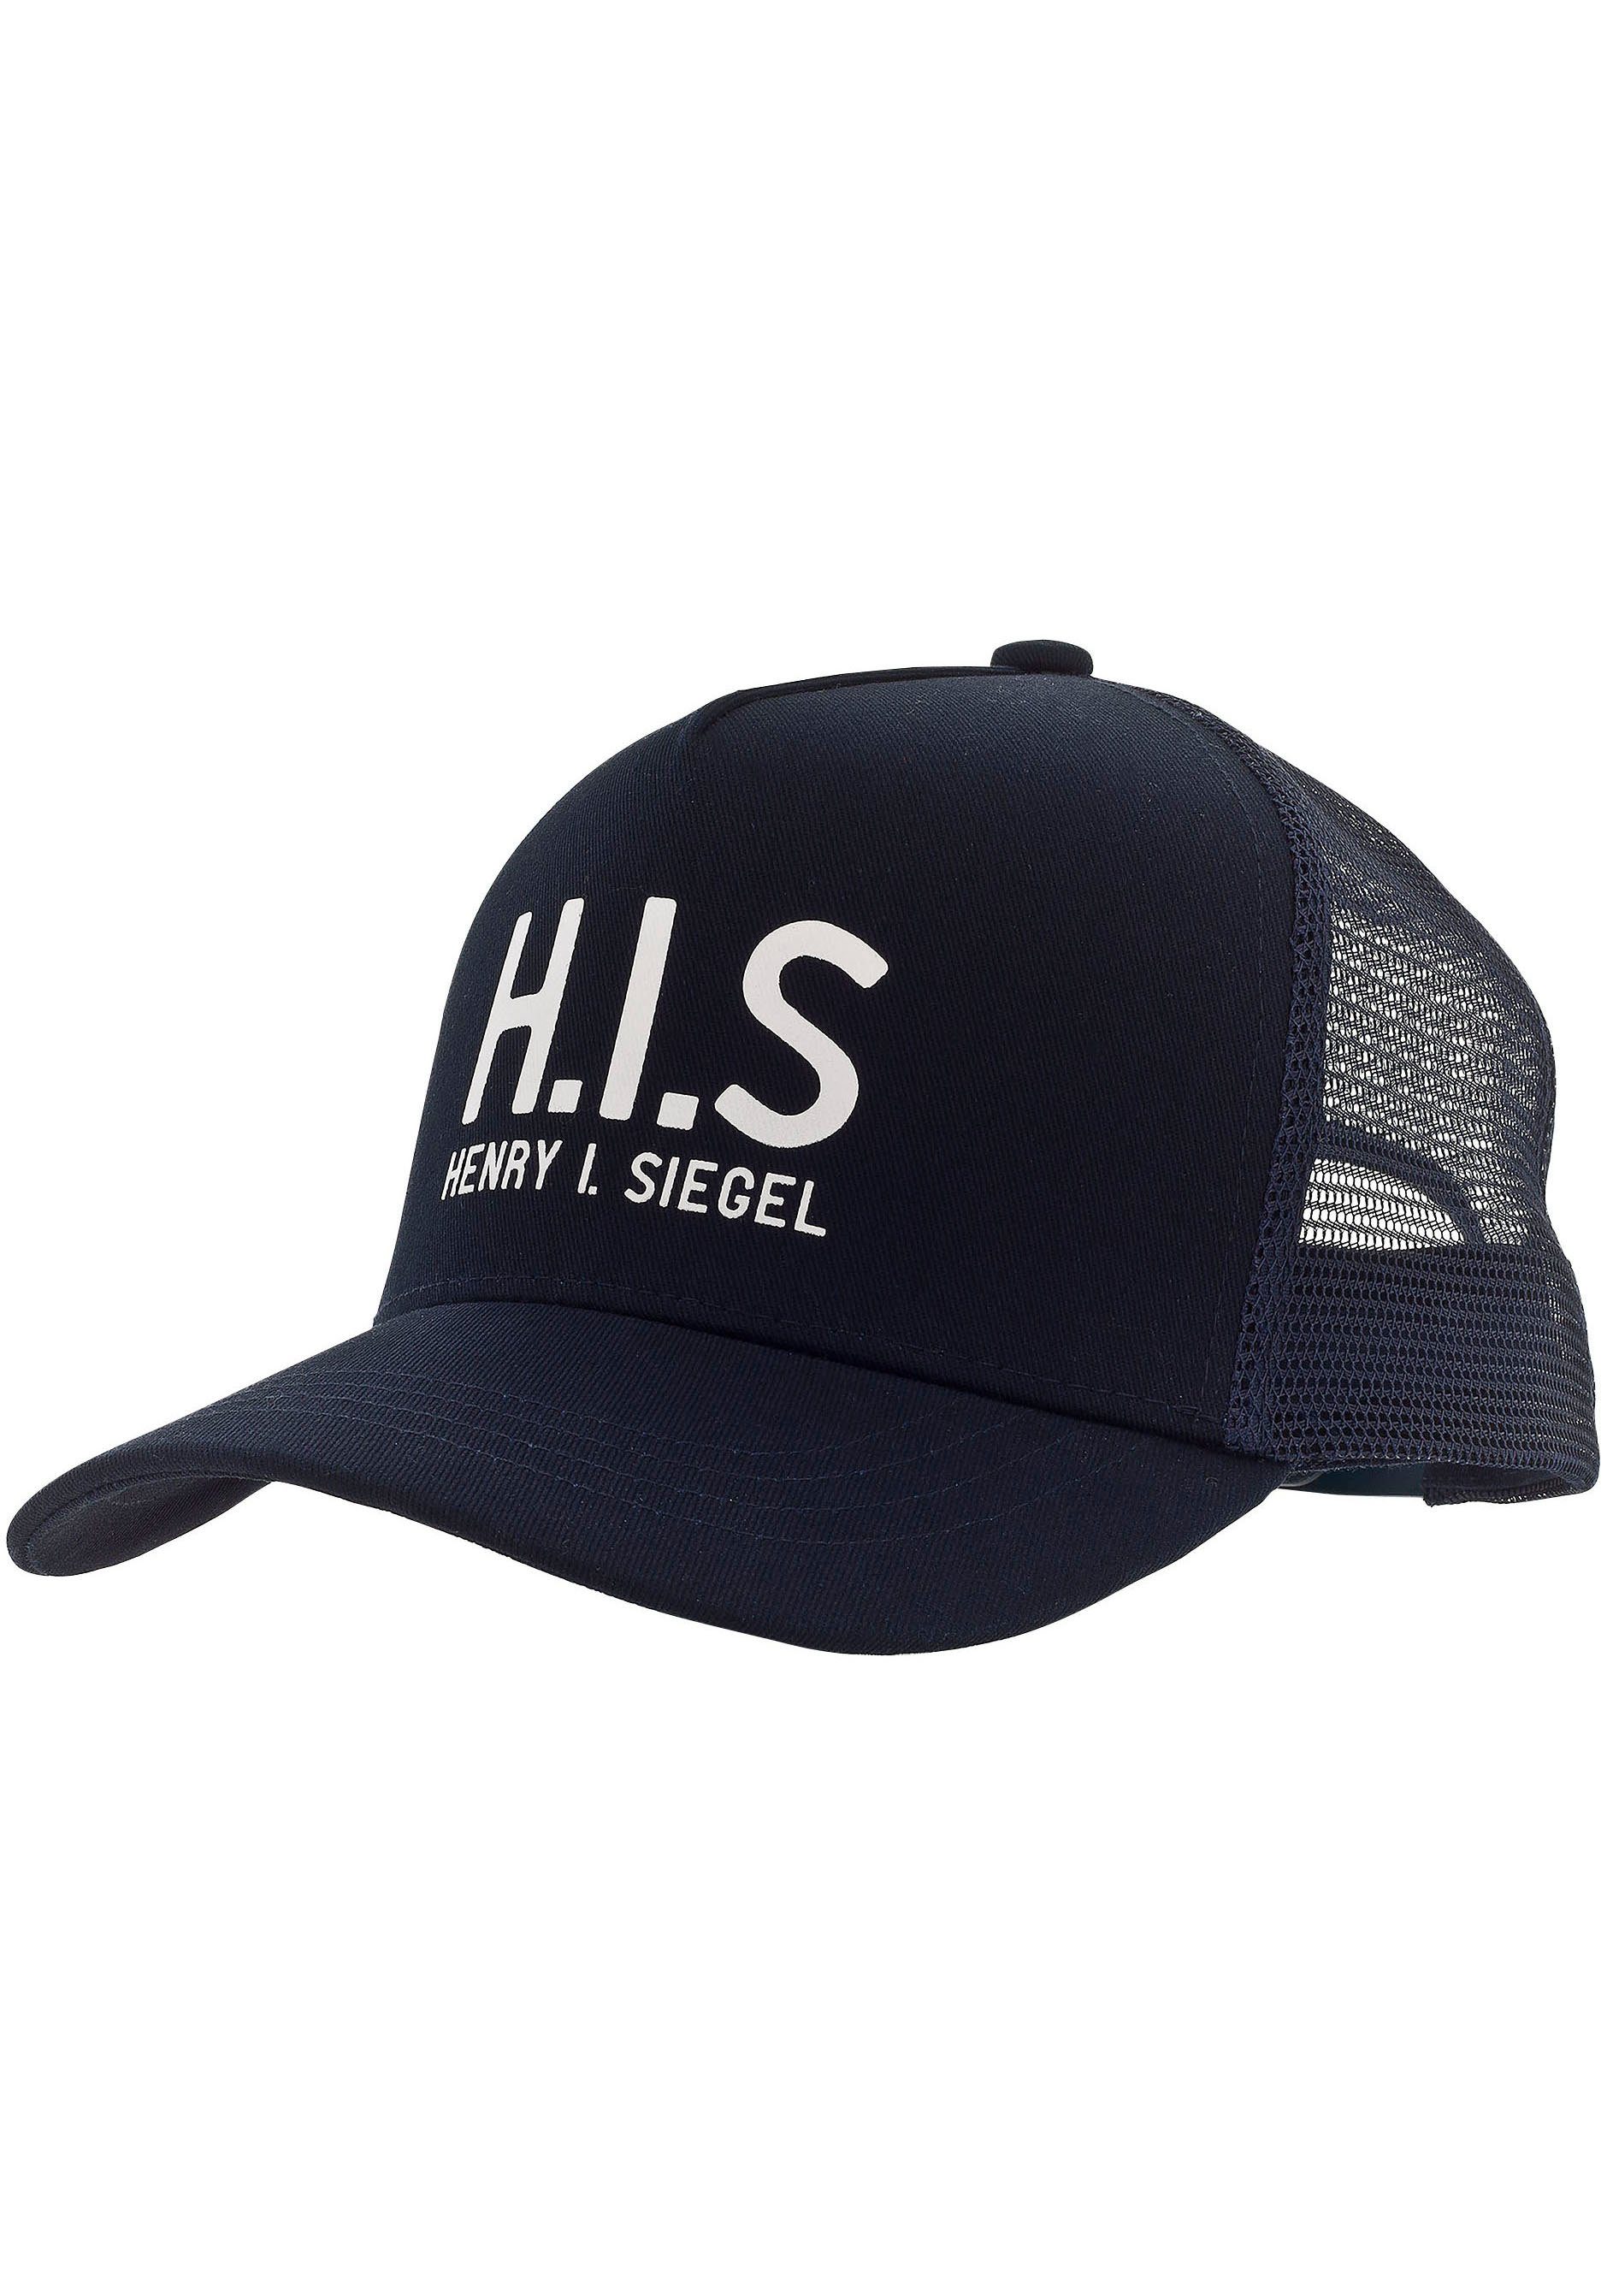 Cap mit H.I.S Baseball Mesh-Cap